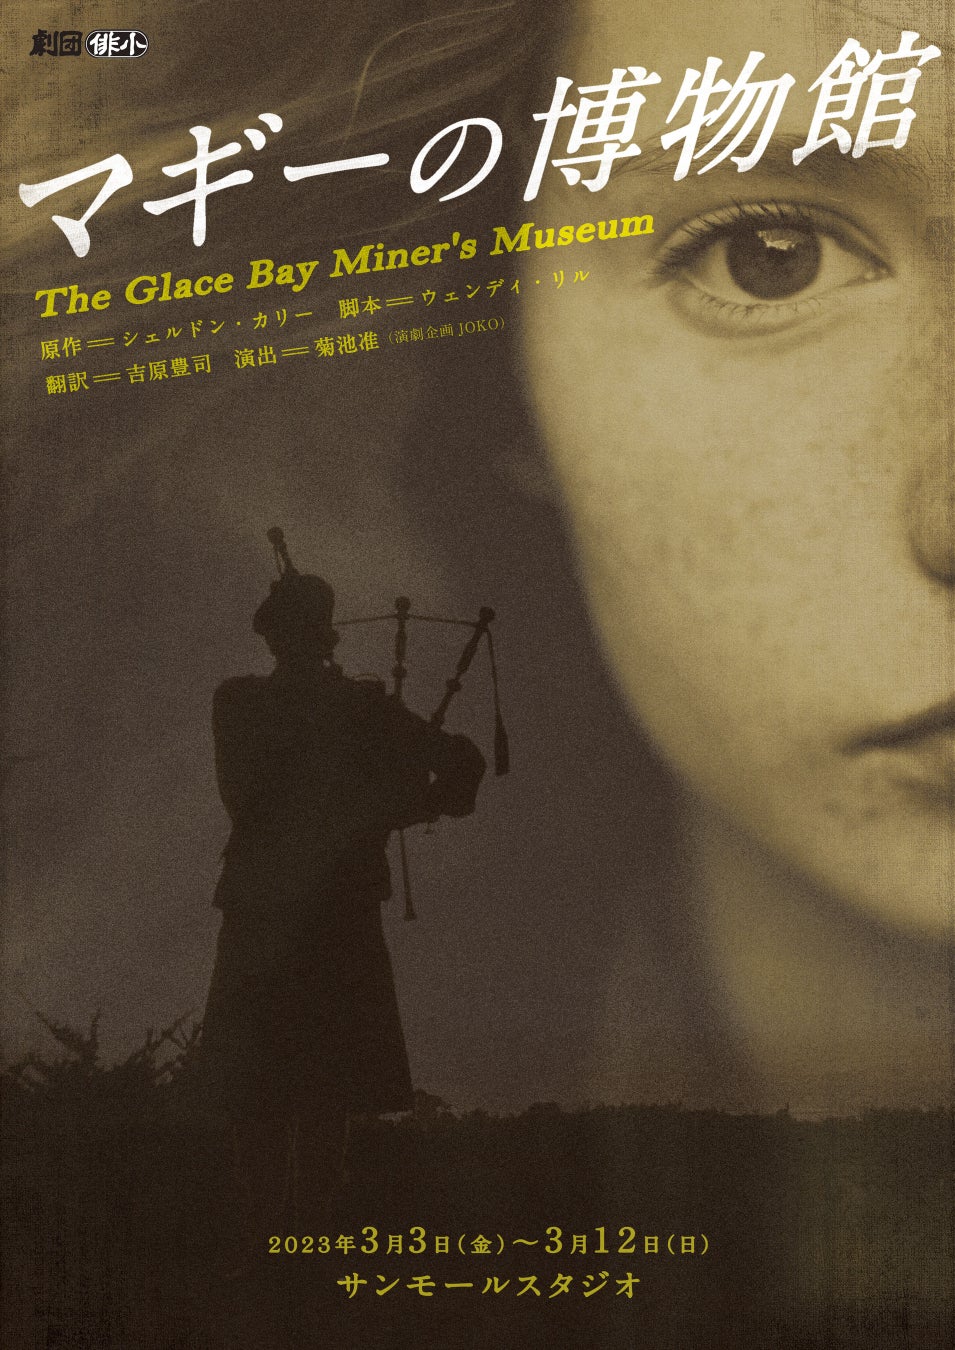 カナダ演劇の秀作 貧しい炭鉱町で生きる少女の物語　劇団俳小『マギーの博物館』上演決定　カンフェティでチケット発売